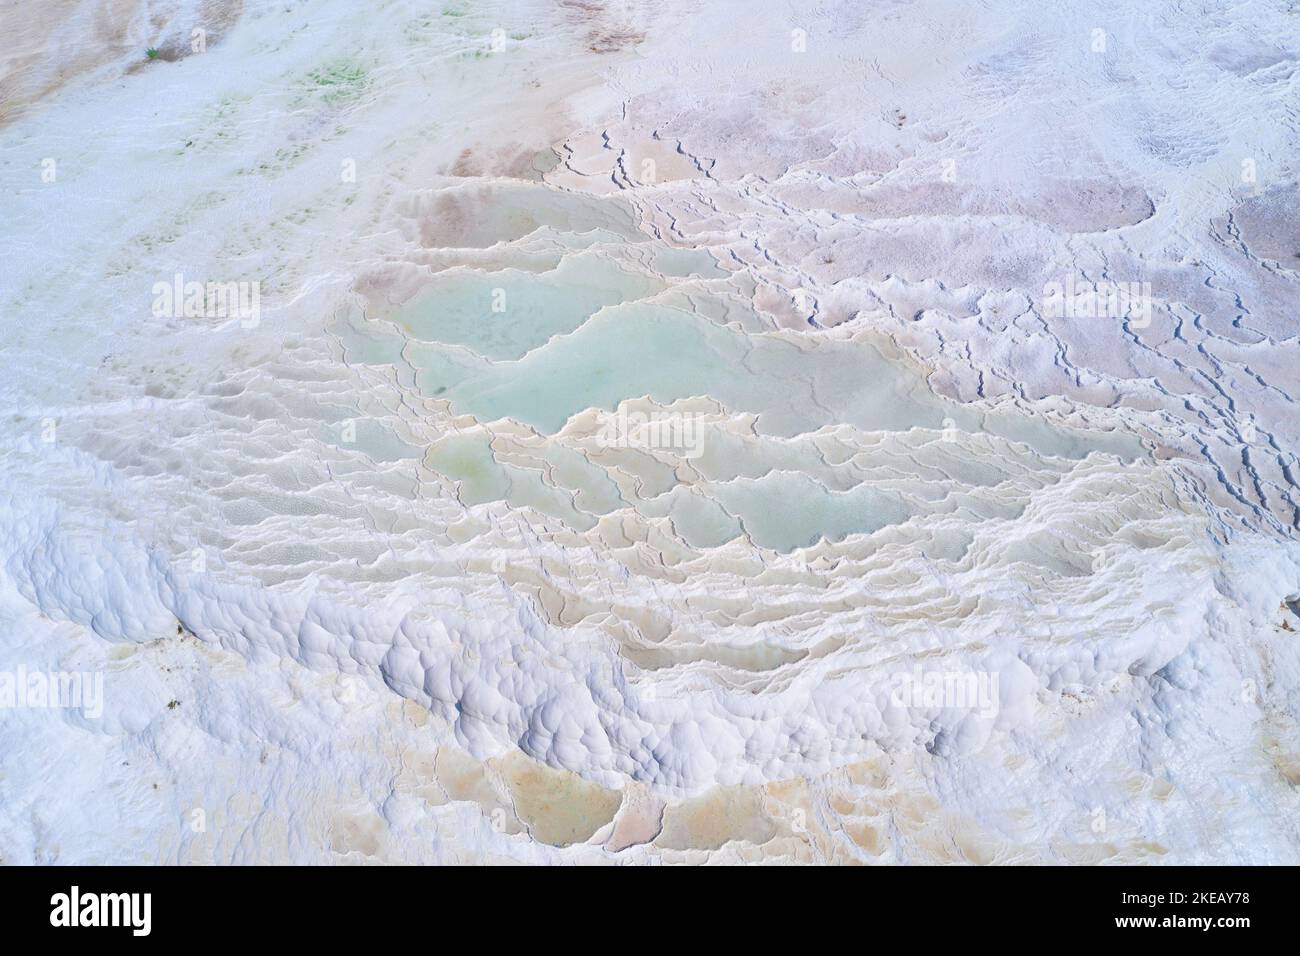 Eau turquoise de source thermale dans les piscines naturelles blanches. Paysage aérien de travertin de Pamukkale Banque D'Images